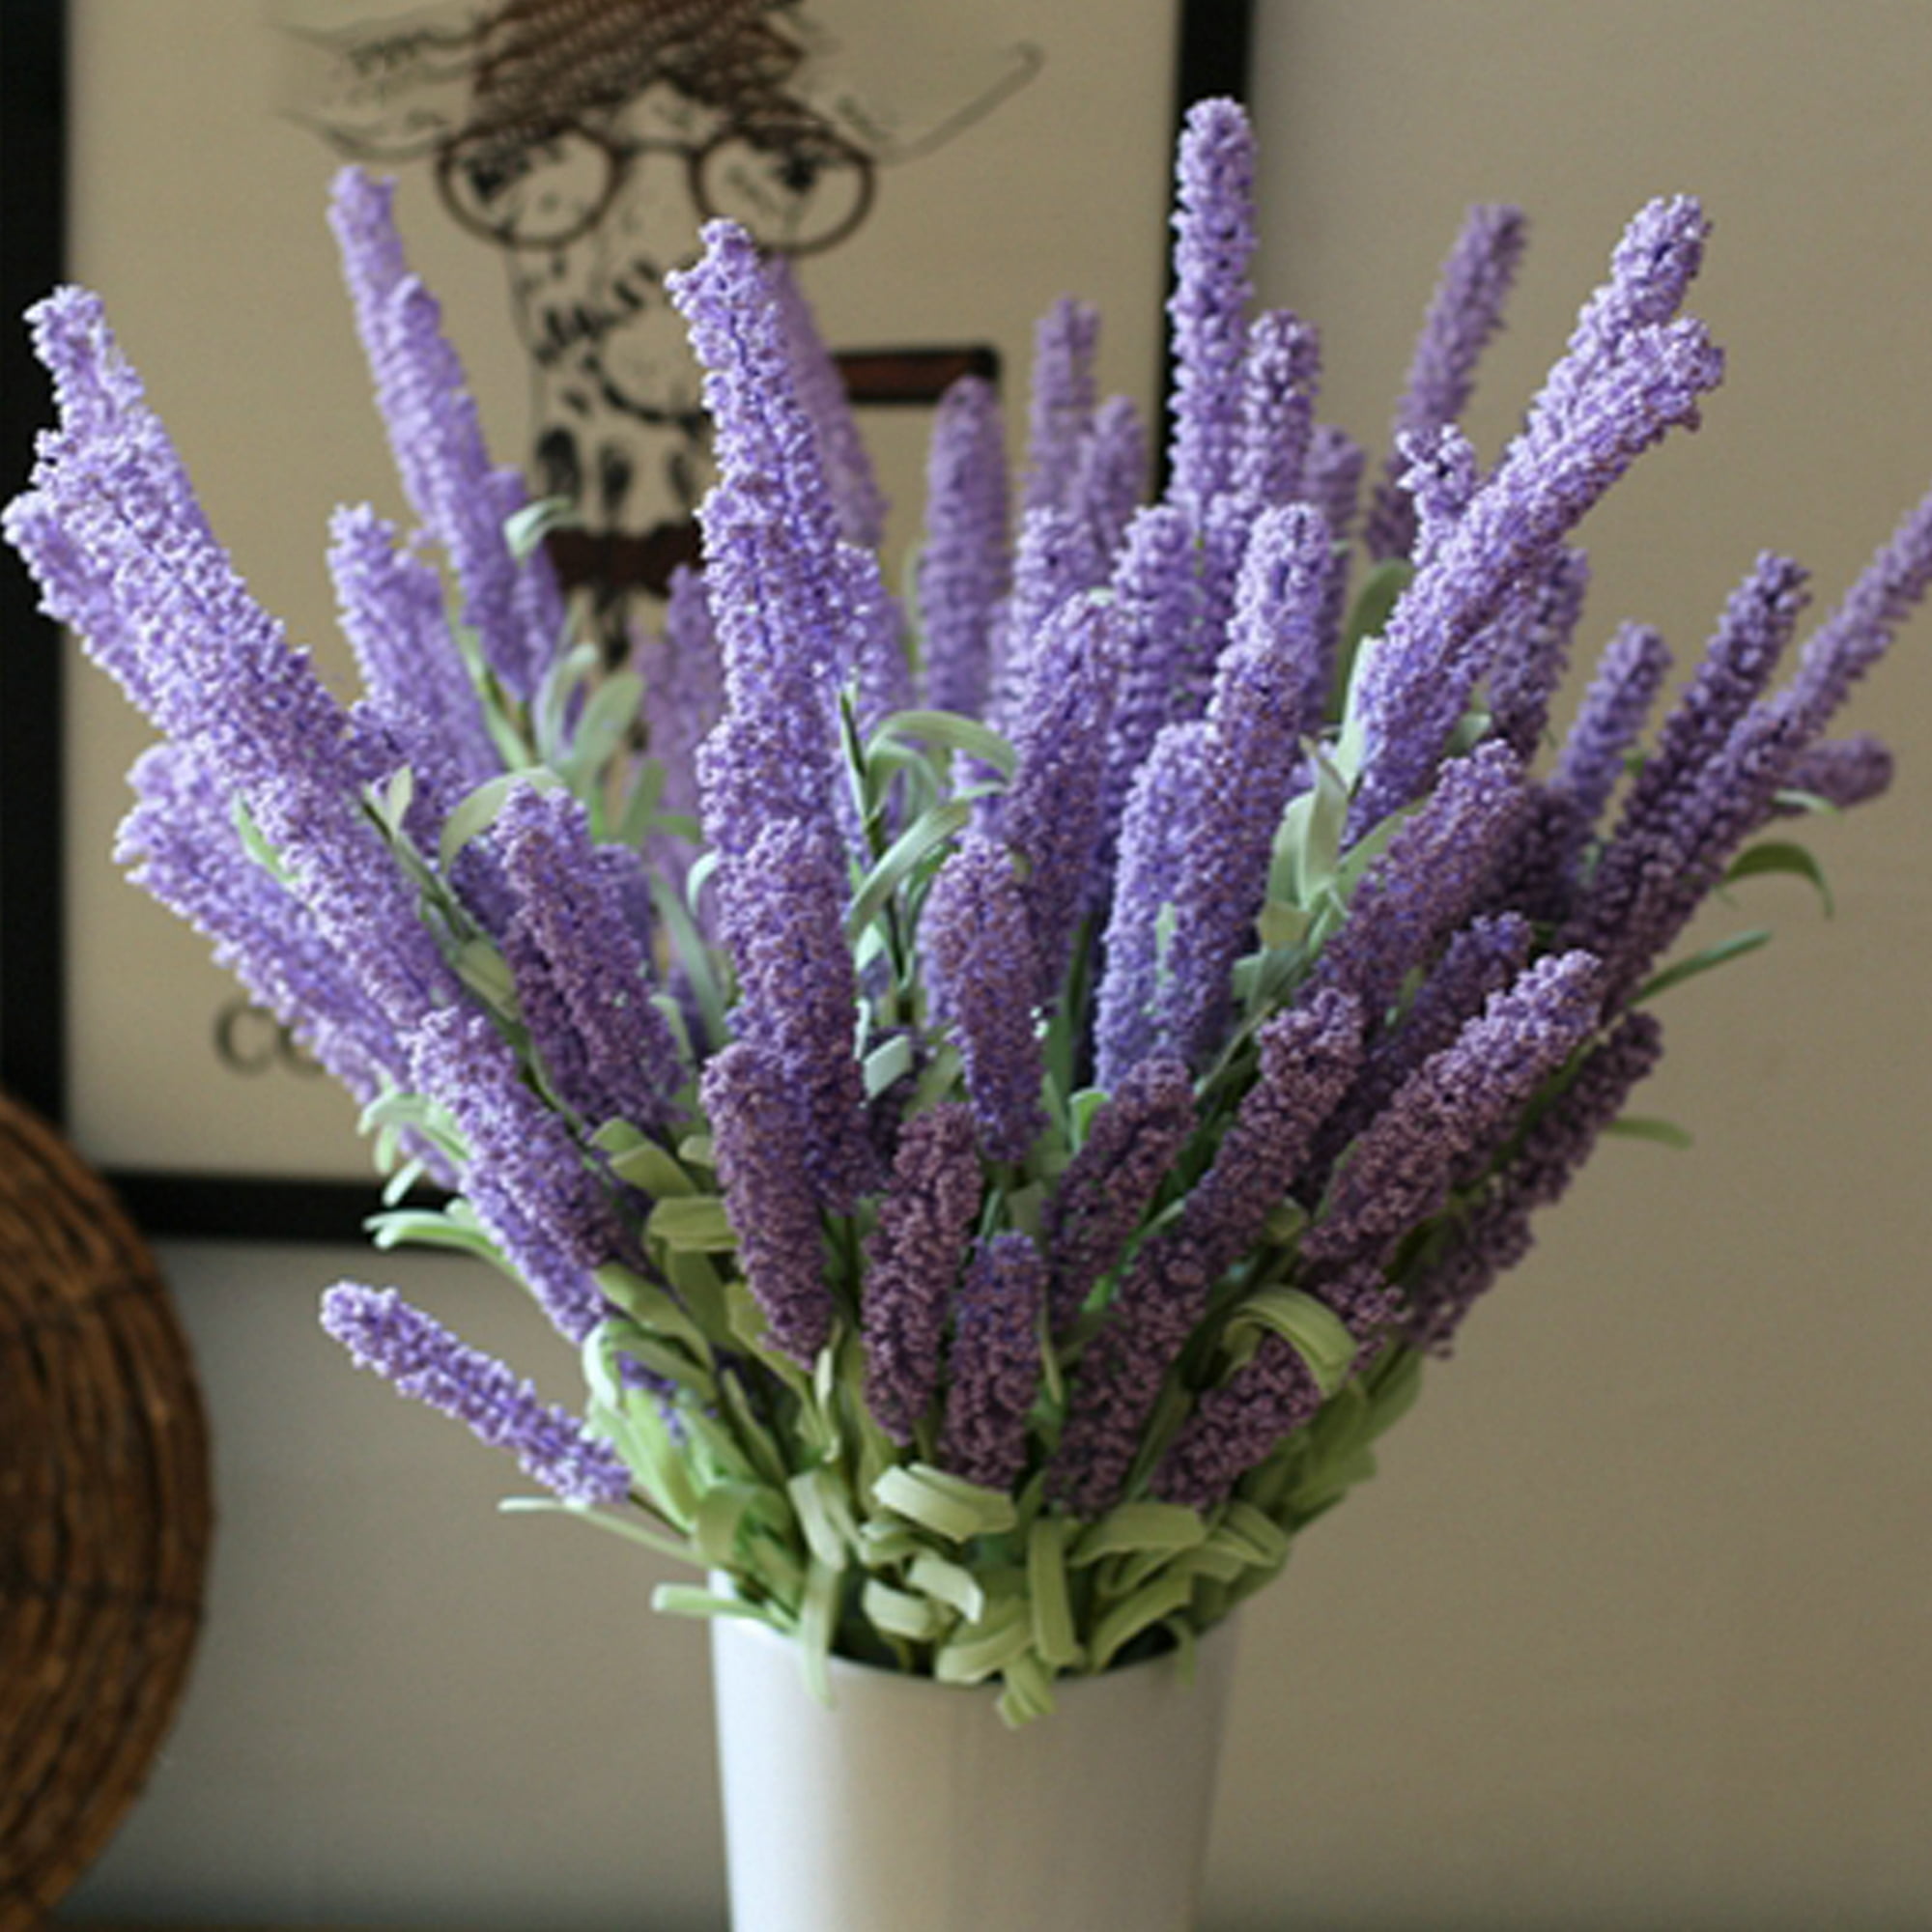 Artificial Lavender Stem|Artificial Flower|Artificial Leaves|Artificial Orchid|Silk Flowers|Flux Flowers|Artificial Floral Bunch